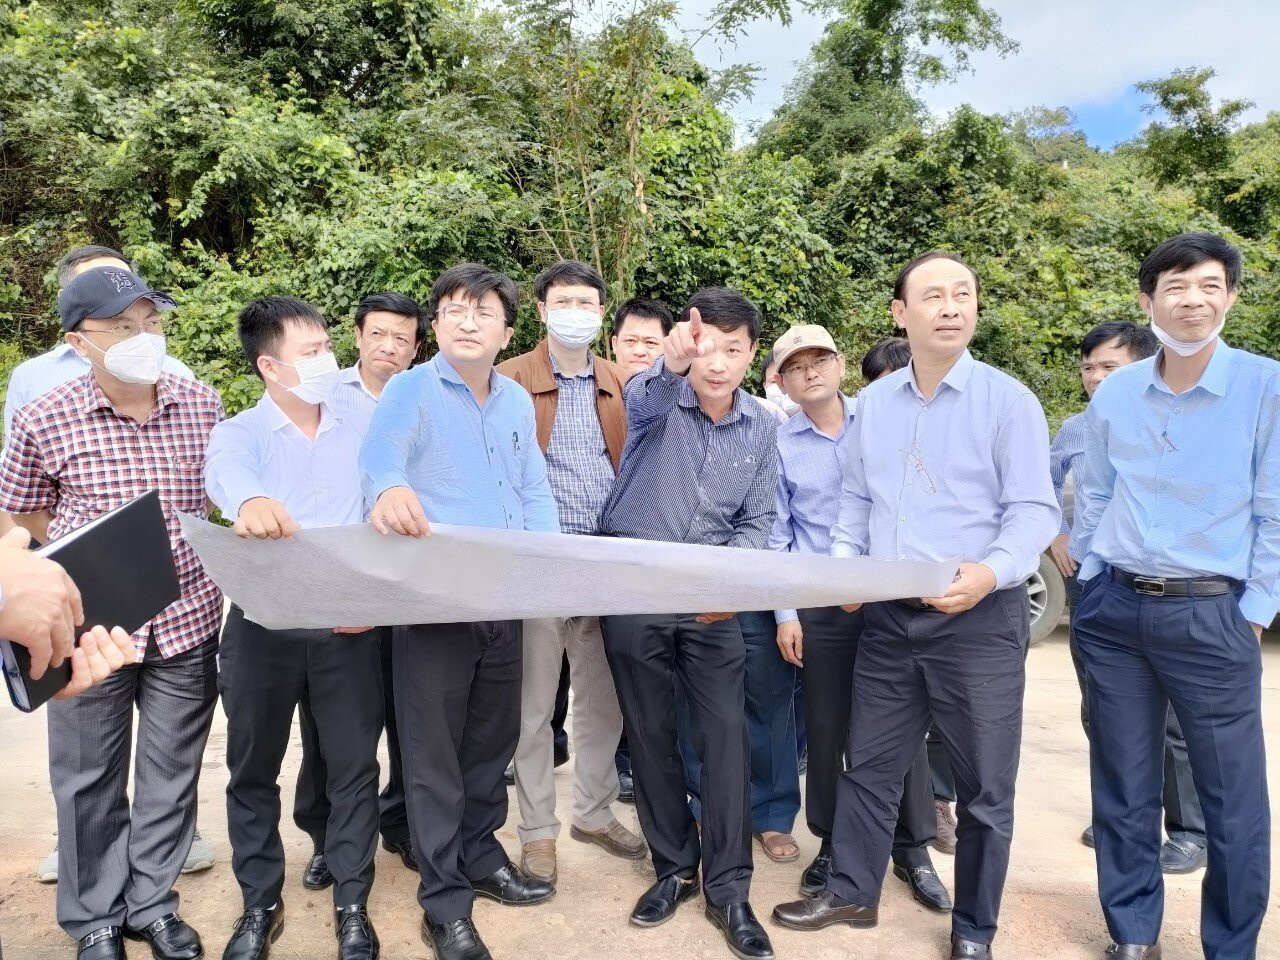 Bình Định: Bay flycam giám sát, ngăn trục lợi từ cao tốc Bắc - Nam